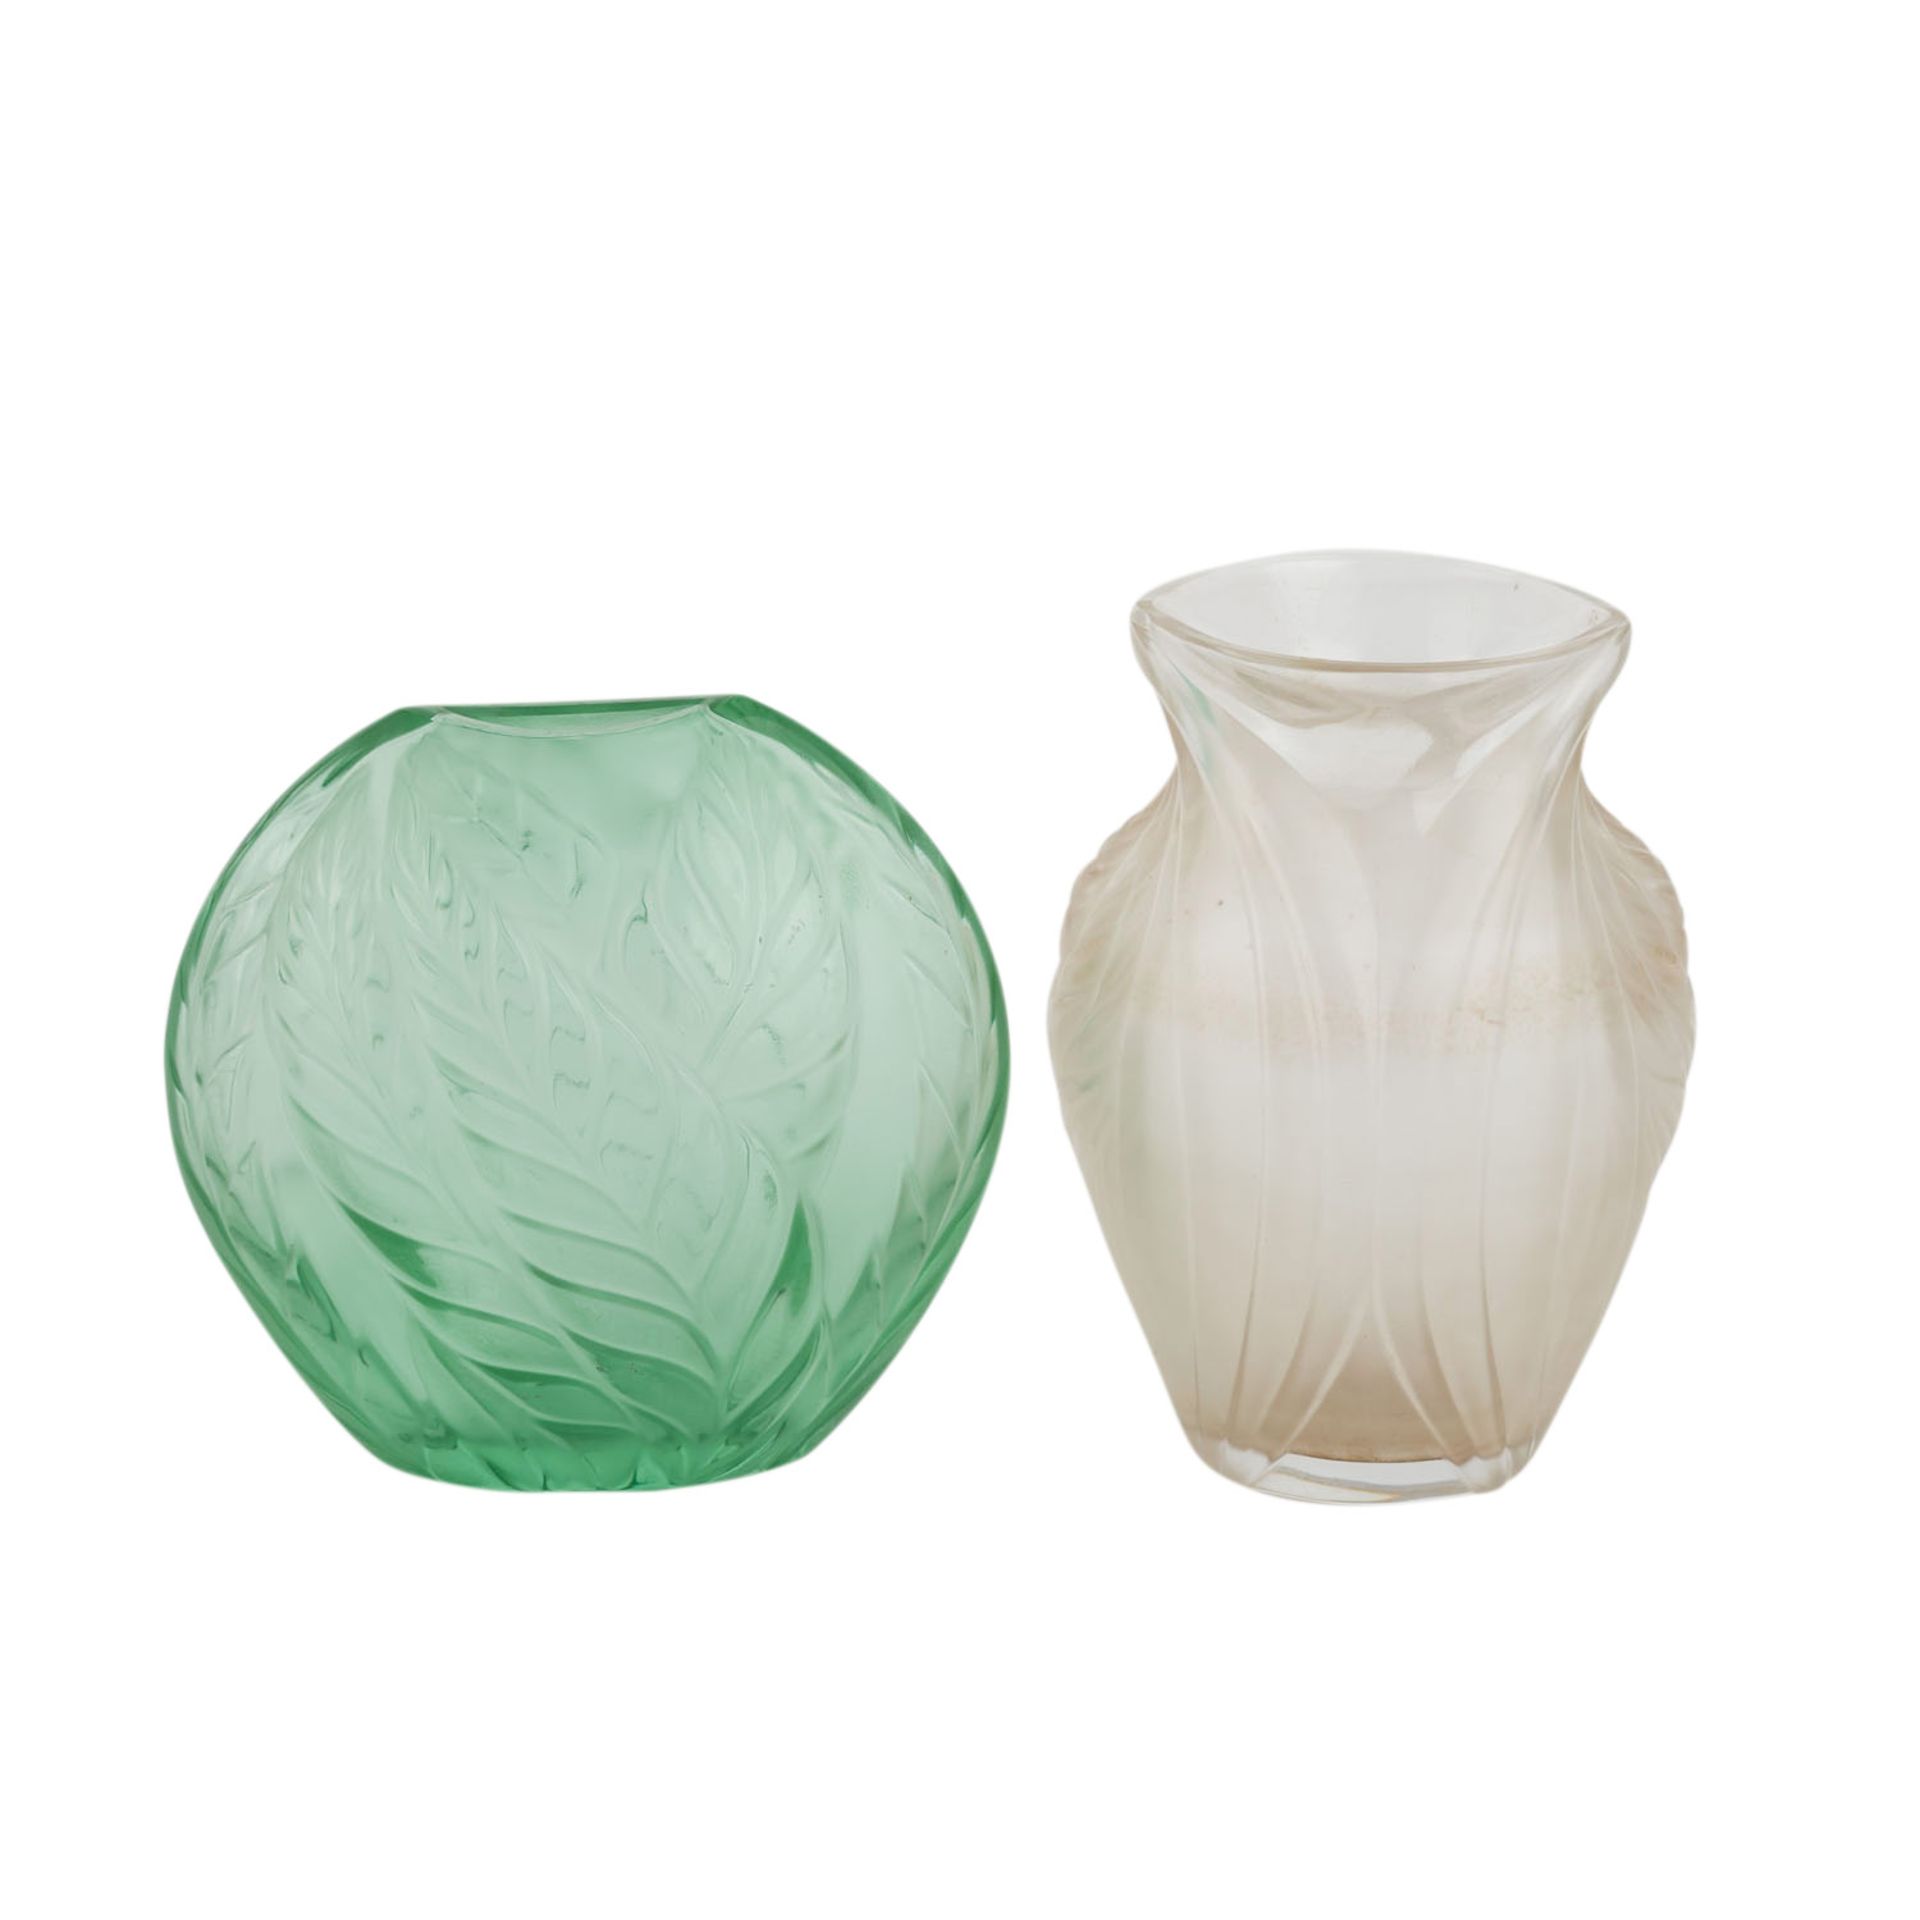 LALIQUE FRANCE ZWEI GLASVASENTransparentes, smaragdgrünes Glas mit Blattdekor und farbloses Glas mit - Image 3 of 6